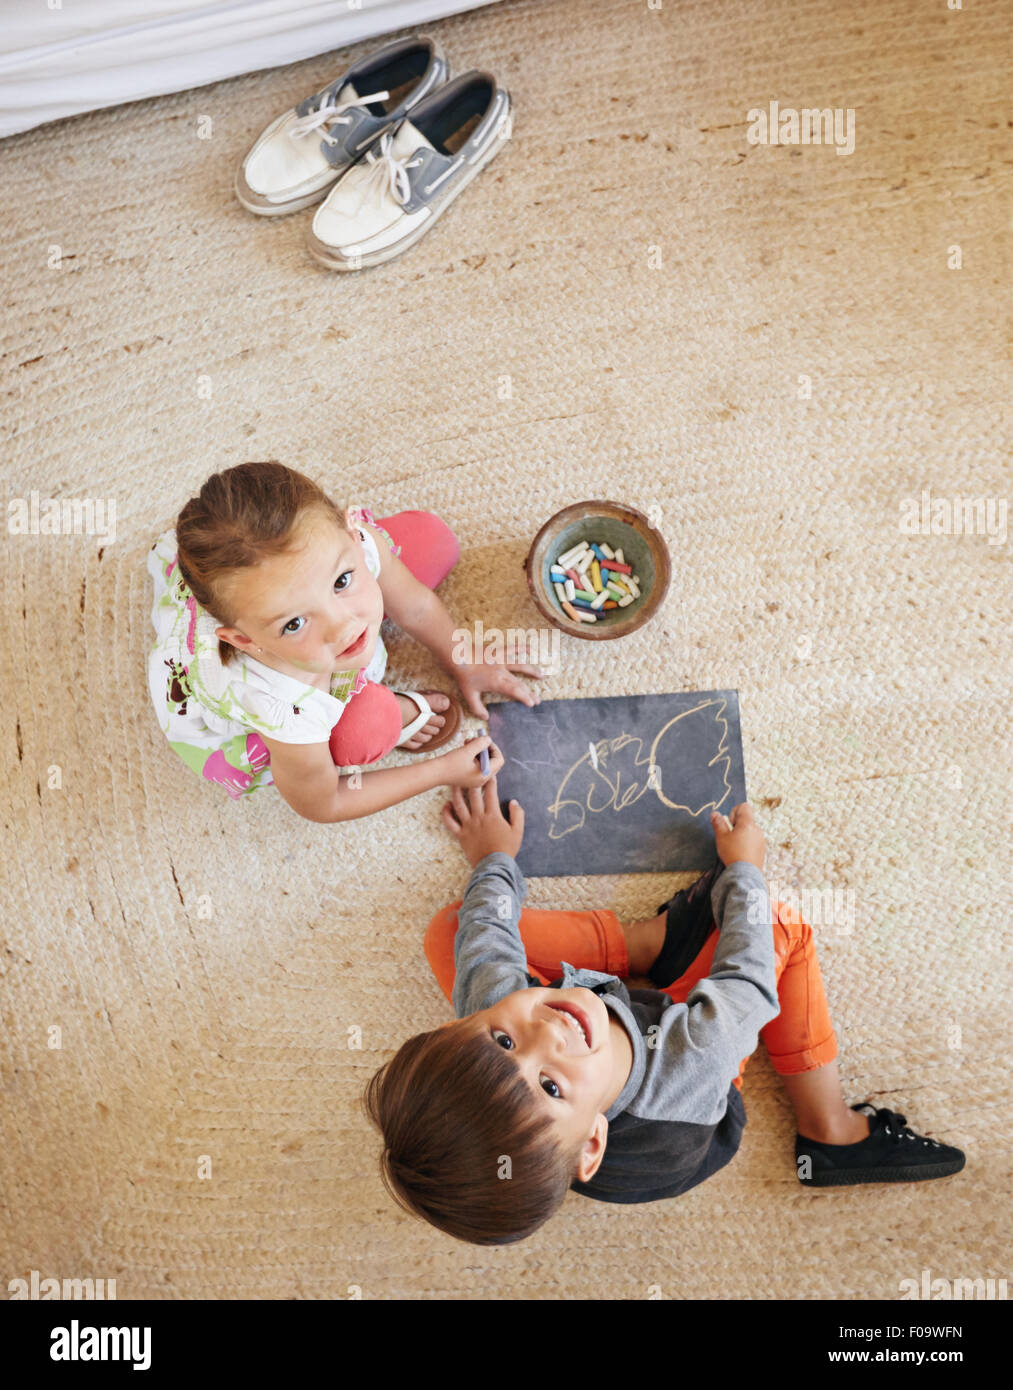 Vue de dessus deux petits enfants assis sur le plancher à la recherche jusqu'à l'appareil alors que le dessin. Banque D'Images